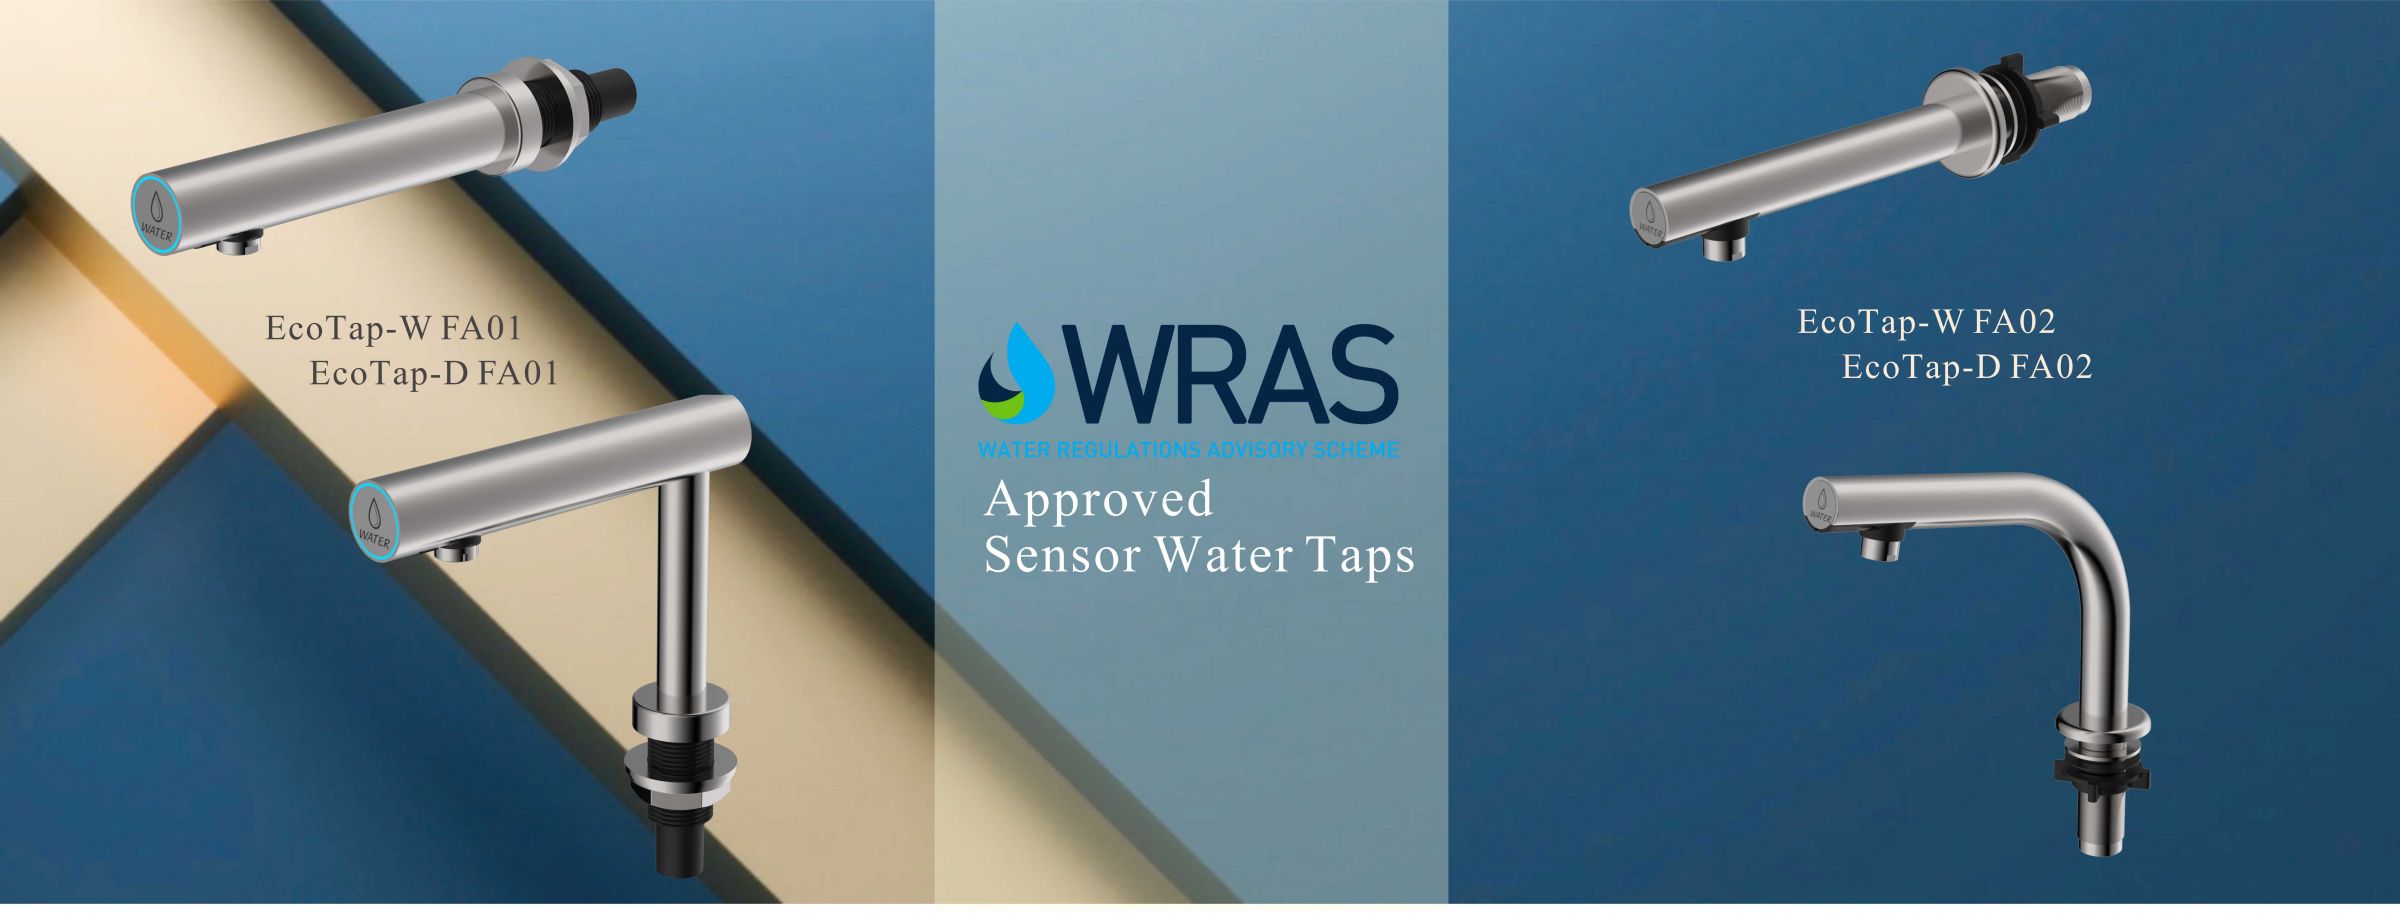 ก๊อกน้ำอัตโนมัติที่ได้รับการรับรอง WRAS